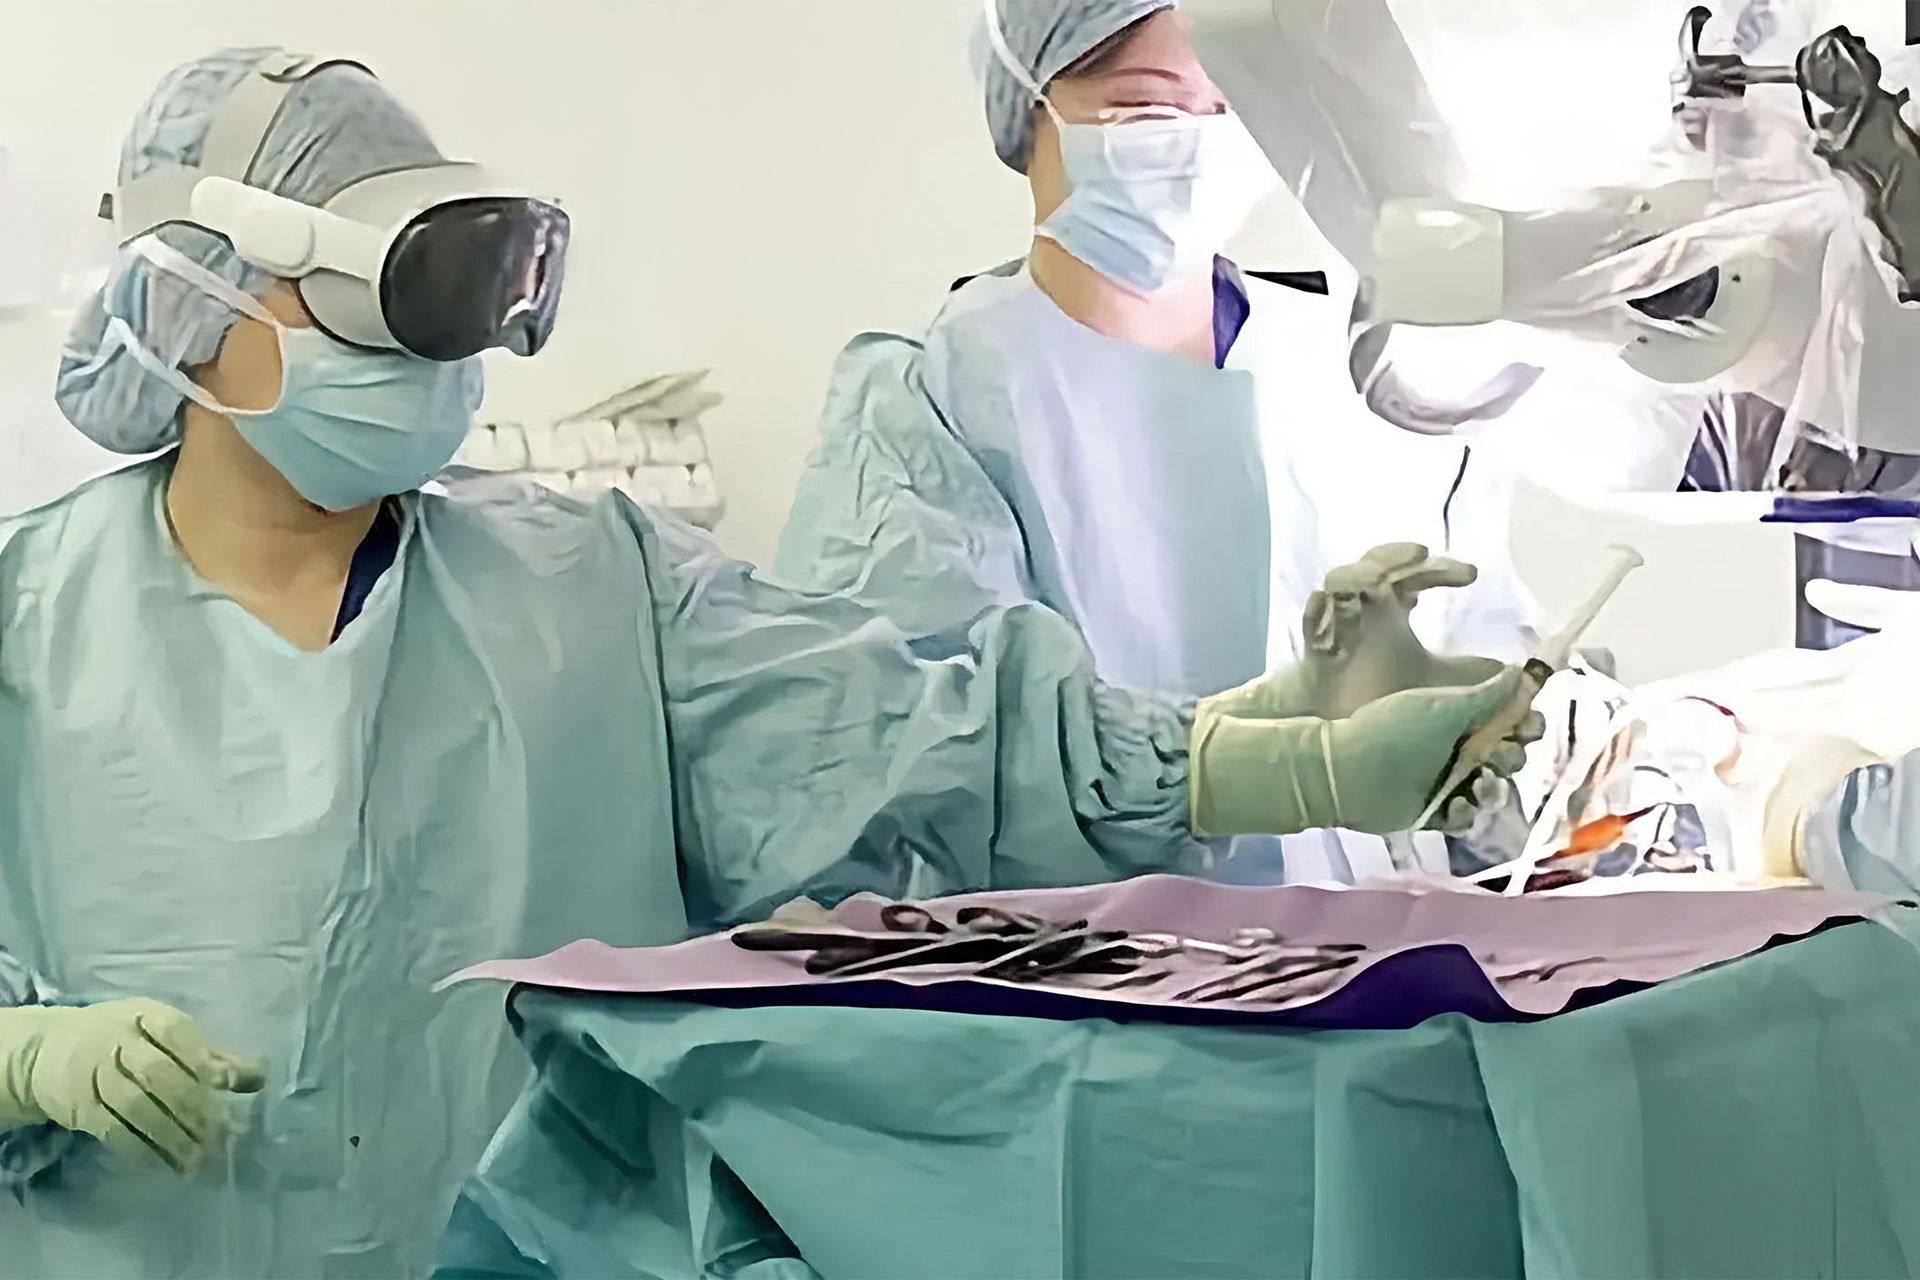 پزشکان در اتاق عمل در حال جراحی و دستیار هدست ویژن پرو اپل روی چشم